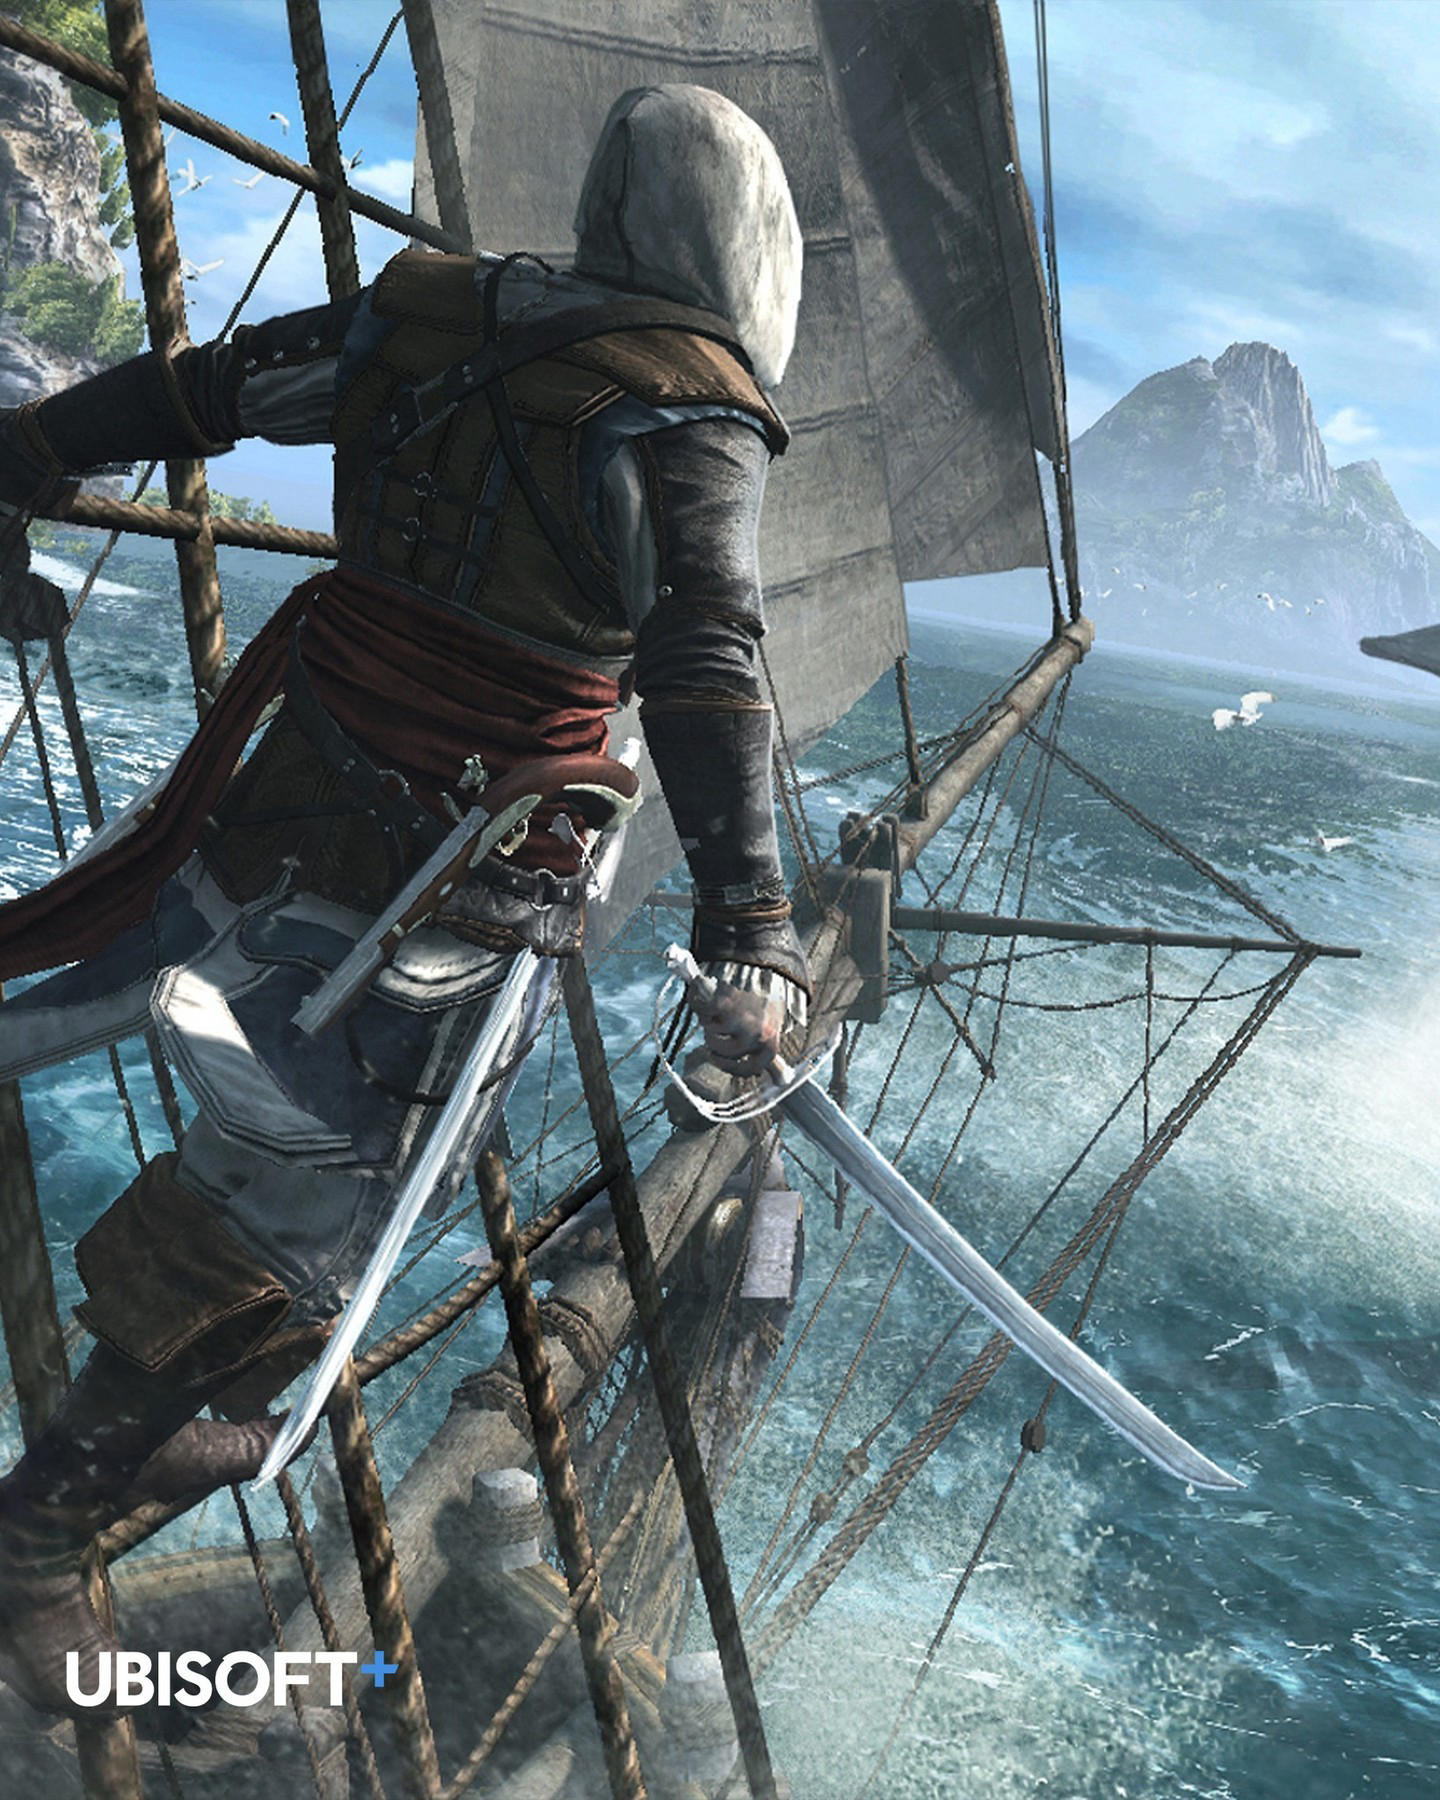 Ubisoft - Let's sail